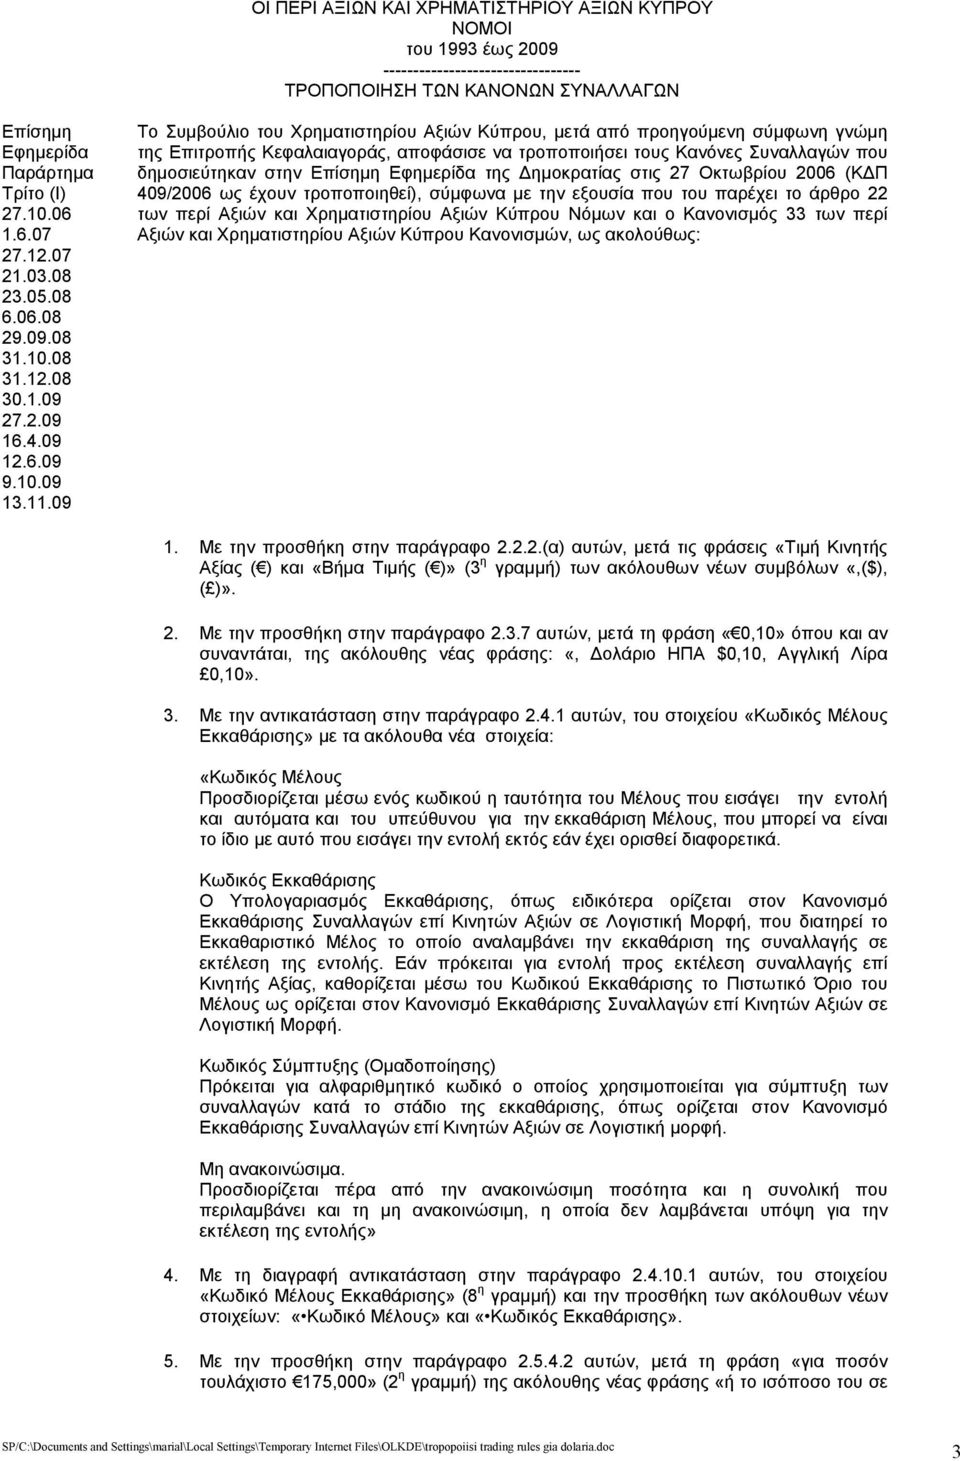 09 Το Συμβούλιο του Χρηματιστηρίου Αξιών Κύπρου, μετά από προηγούμενη σύμφωνη γνώμη της Επιτροπής Κεφαλαιαγοράς, αποφάσισε να τροποποιήσει τους Κανόνες Συναλλαγών που δημοσιεύτηκαν στην Επίσημη